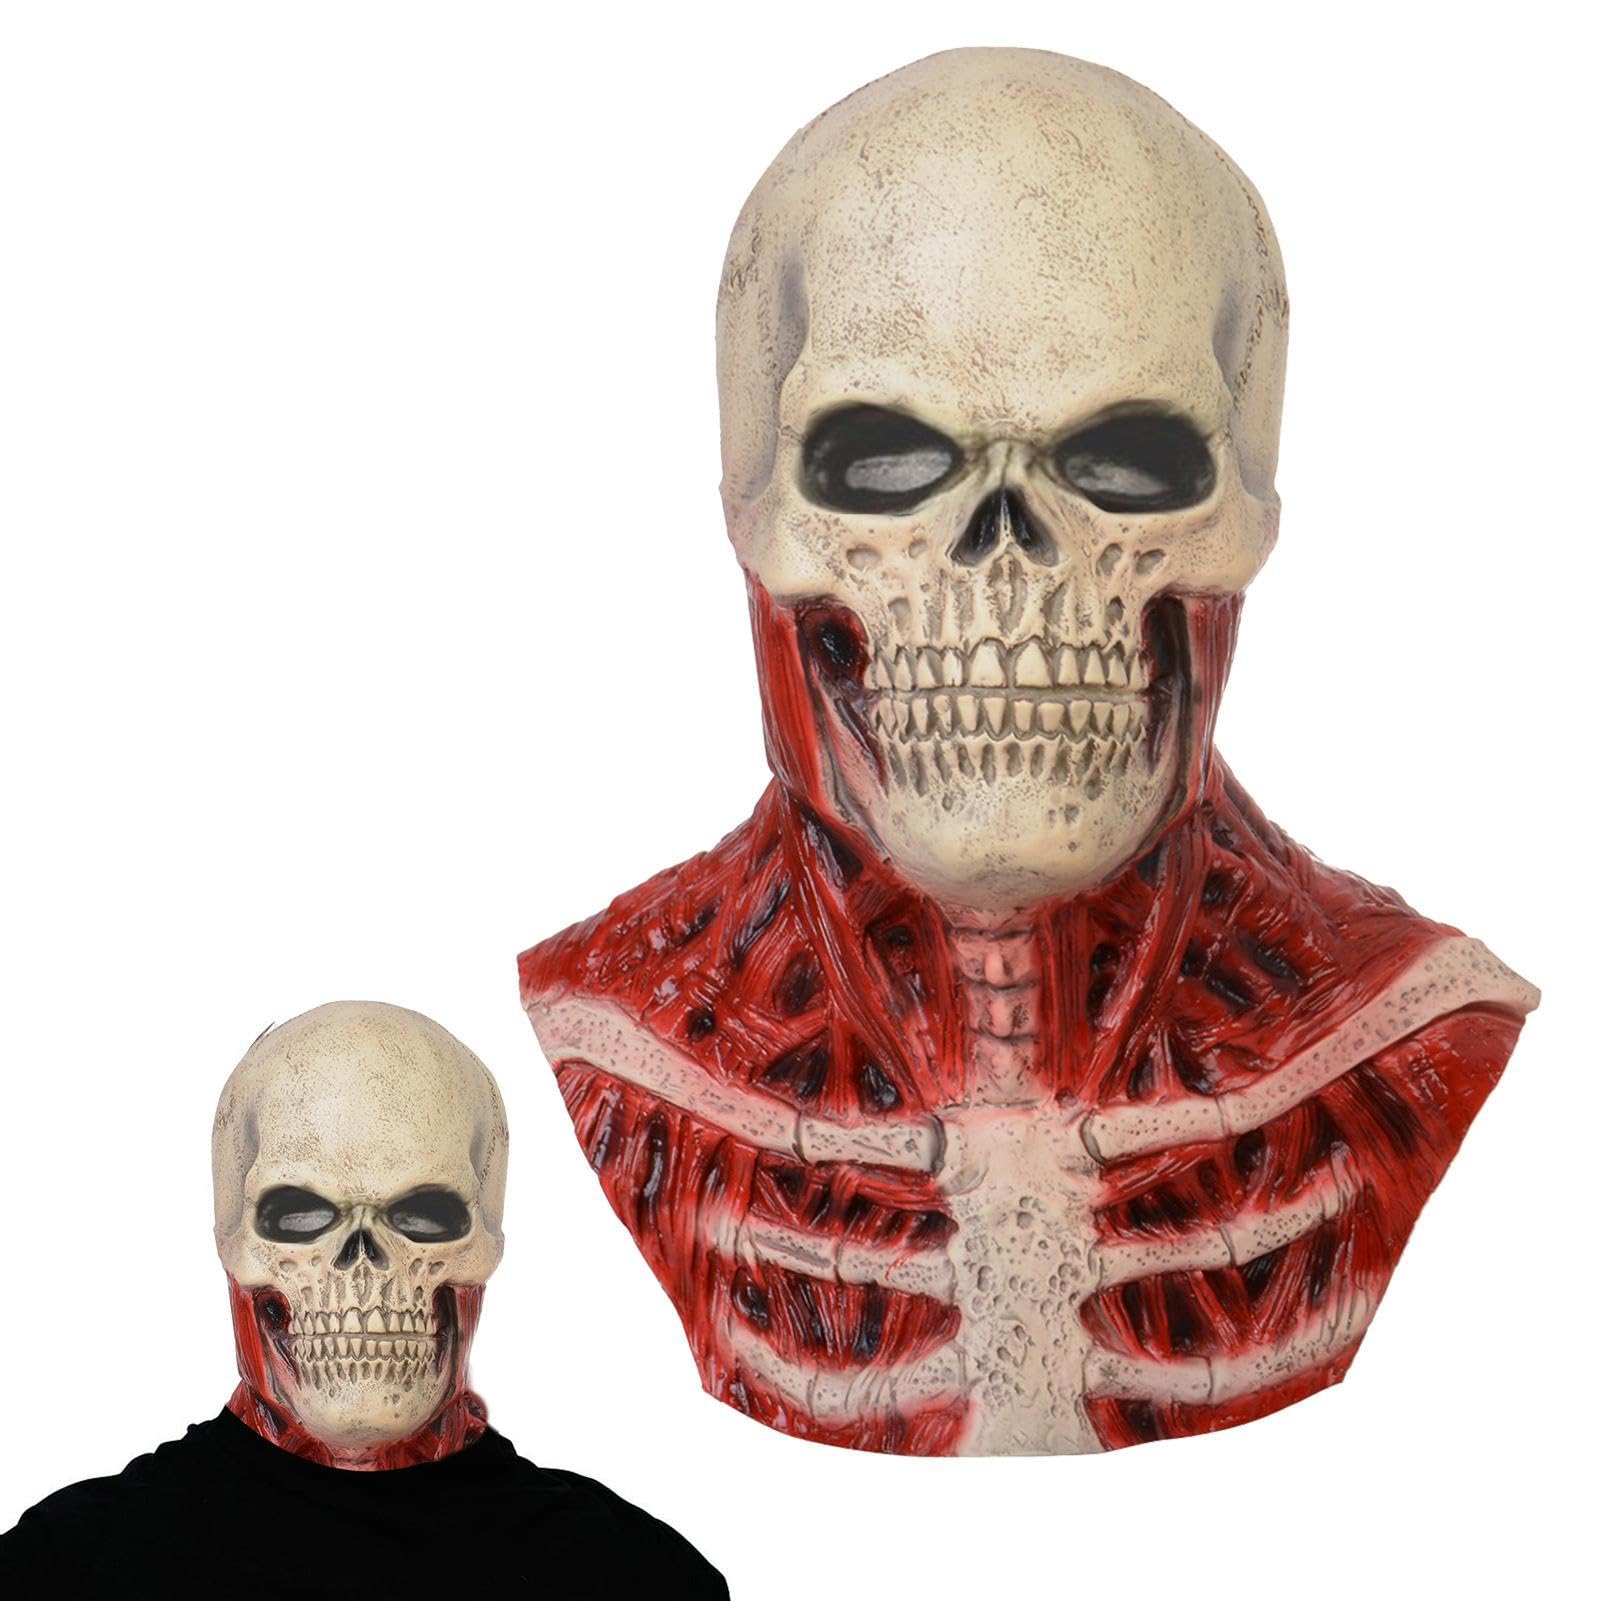 Wilmot Totenkopf-Kopfbedeckung | Blutige Halloween-Deko-Schädelköpfe | Gruselige Latex-Gesichtsbedeckung, realistische gruselige Latex-Kopfbedeckung für die Weihnachts-Maskerade-Party